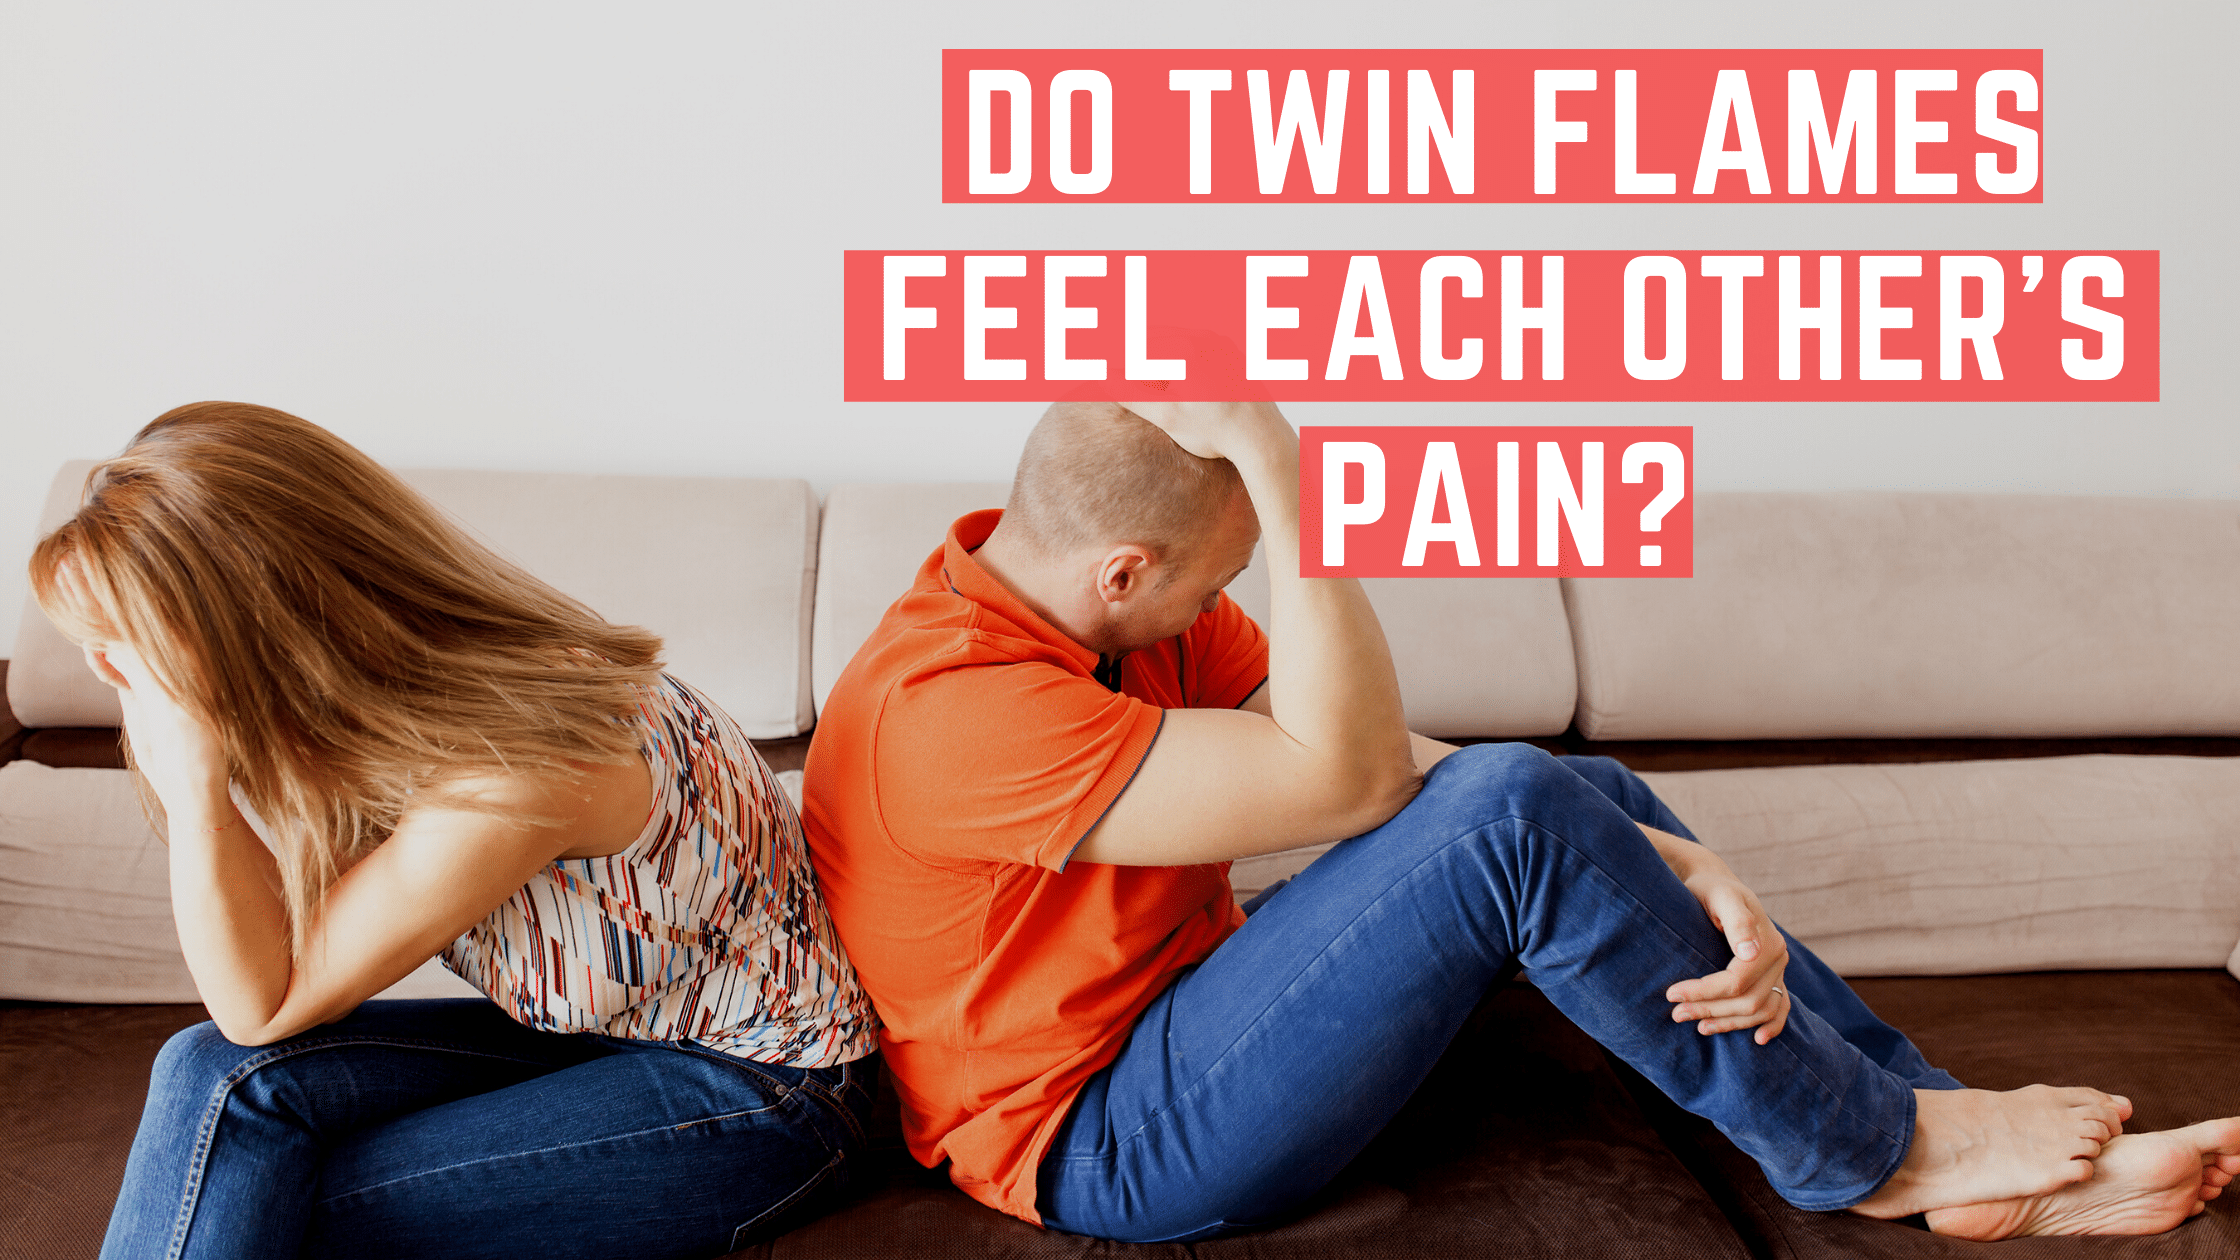 Os gêmeos podem sentir a dor um do outro?